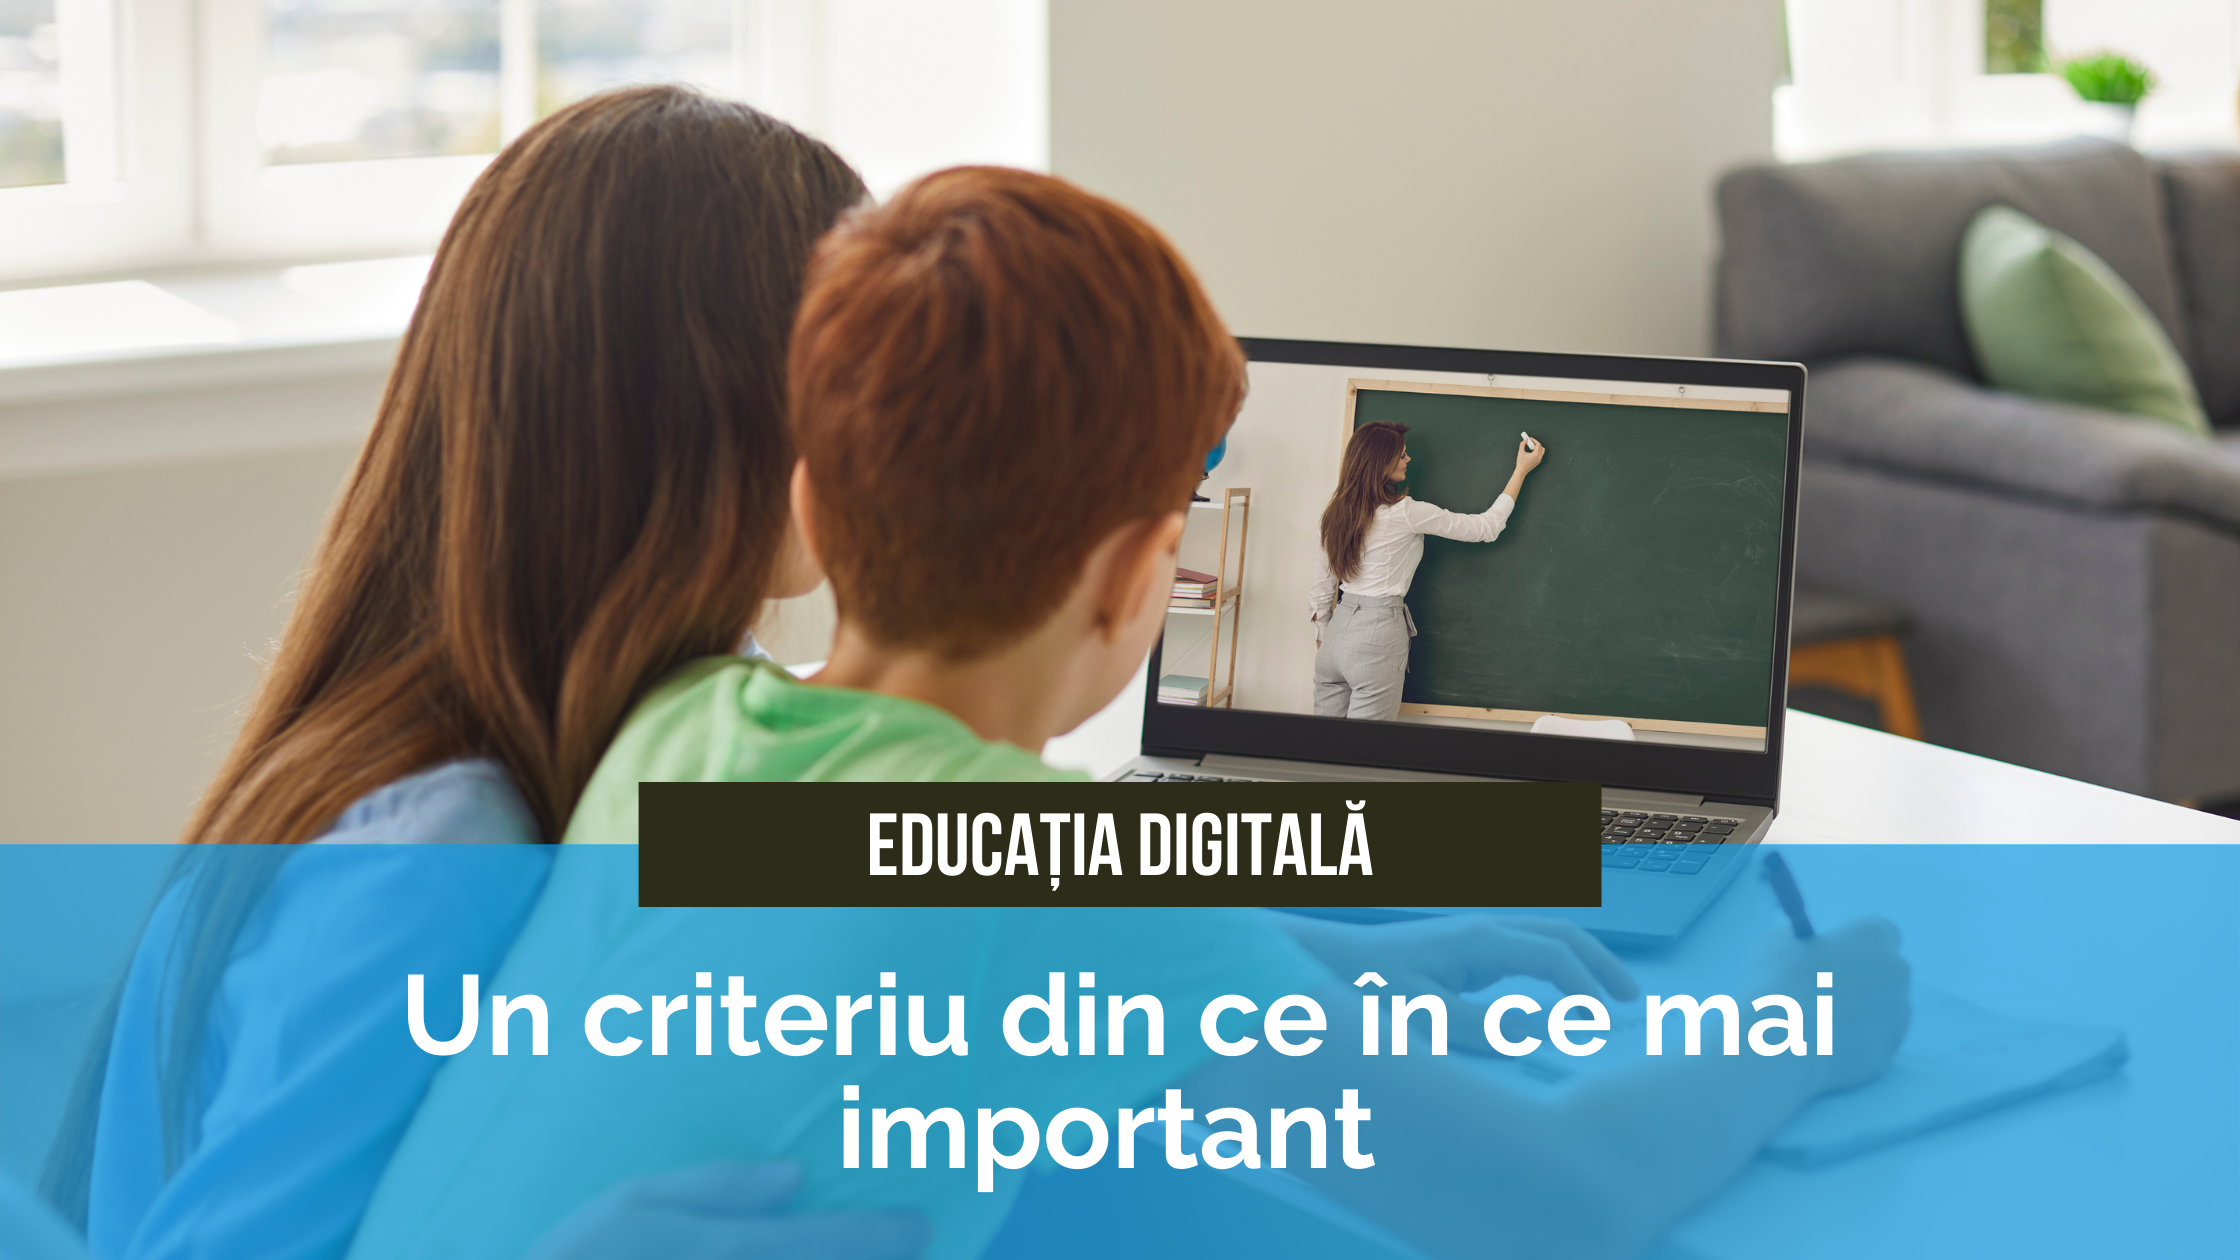 Educatia digitala - Upper School